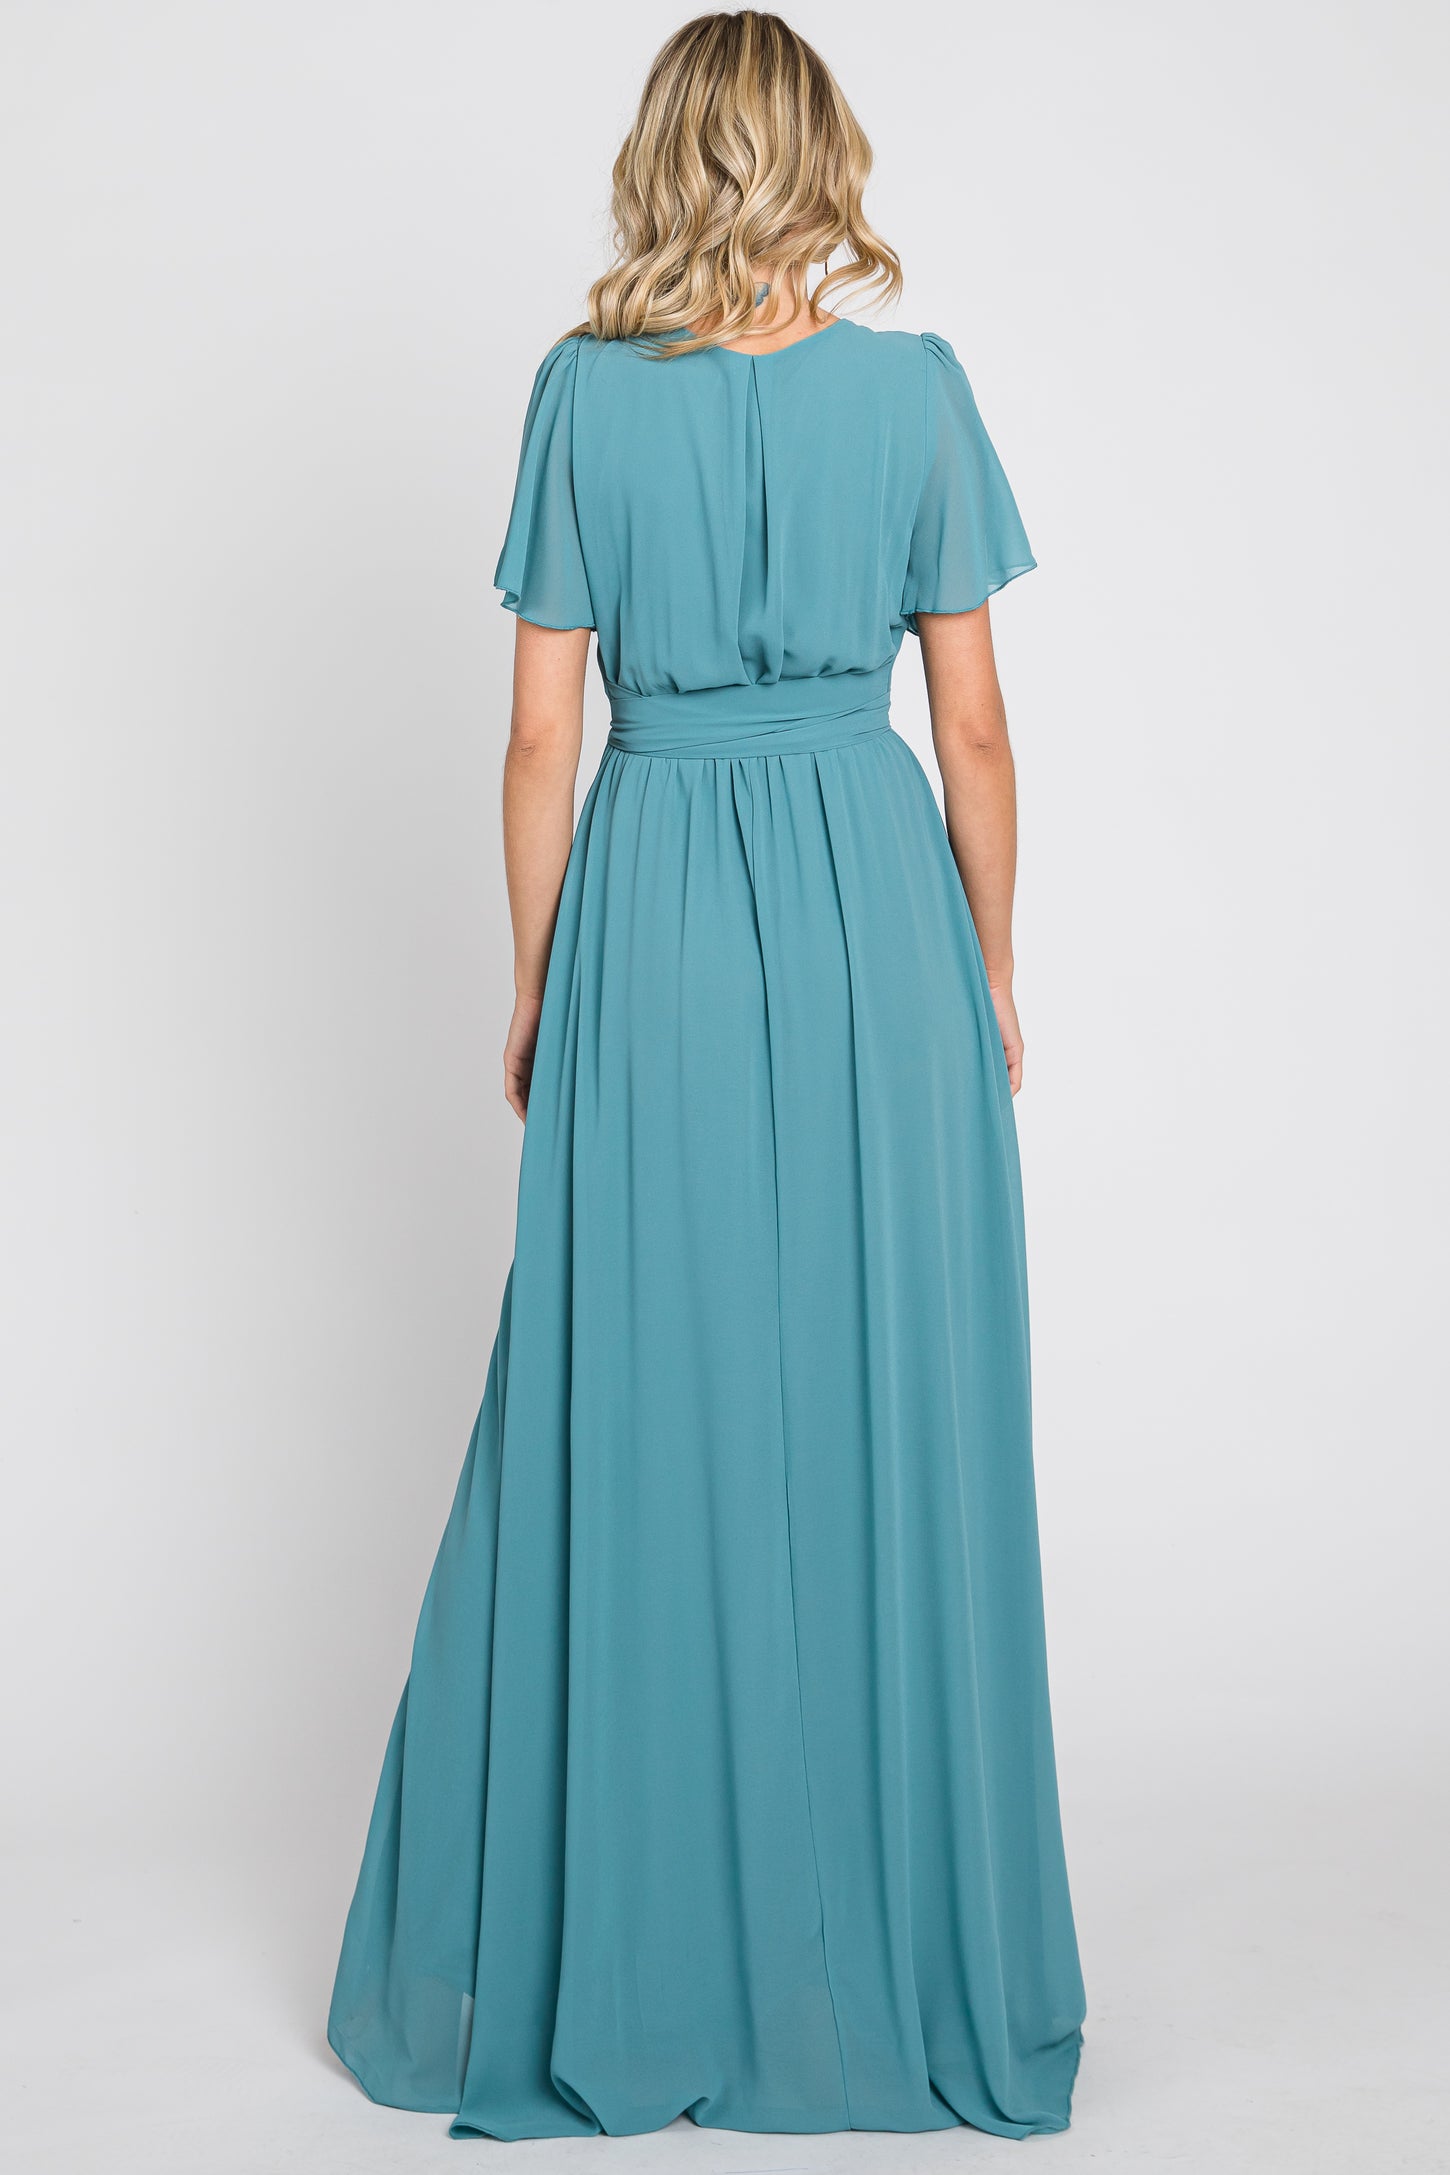 Turquoise Chiffon Short Sleeve Wrap V-Neck Front Slit Maxi Dress